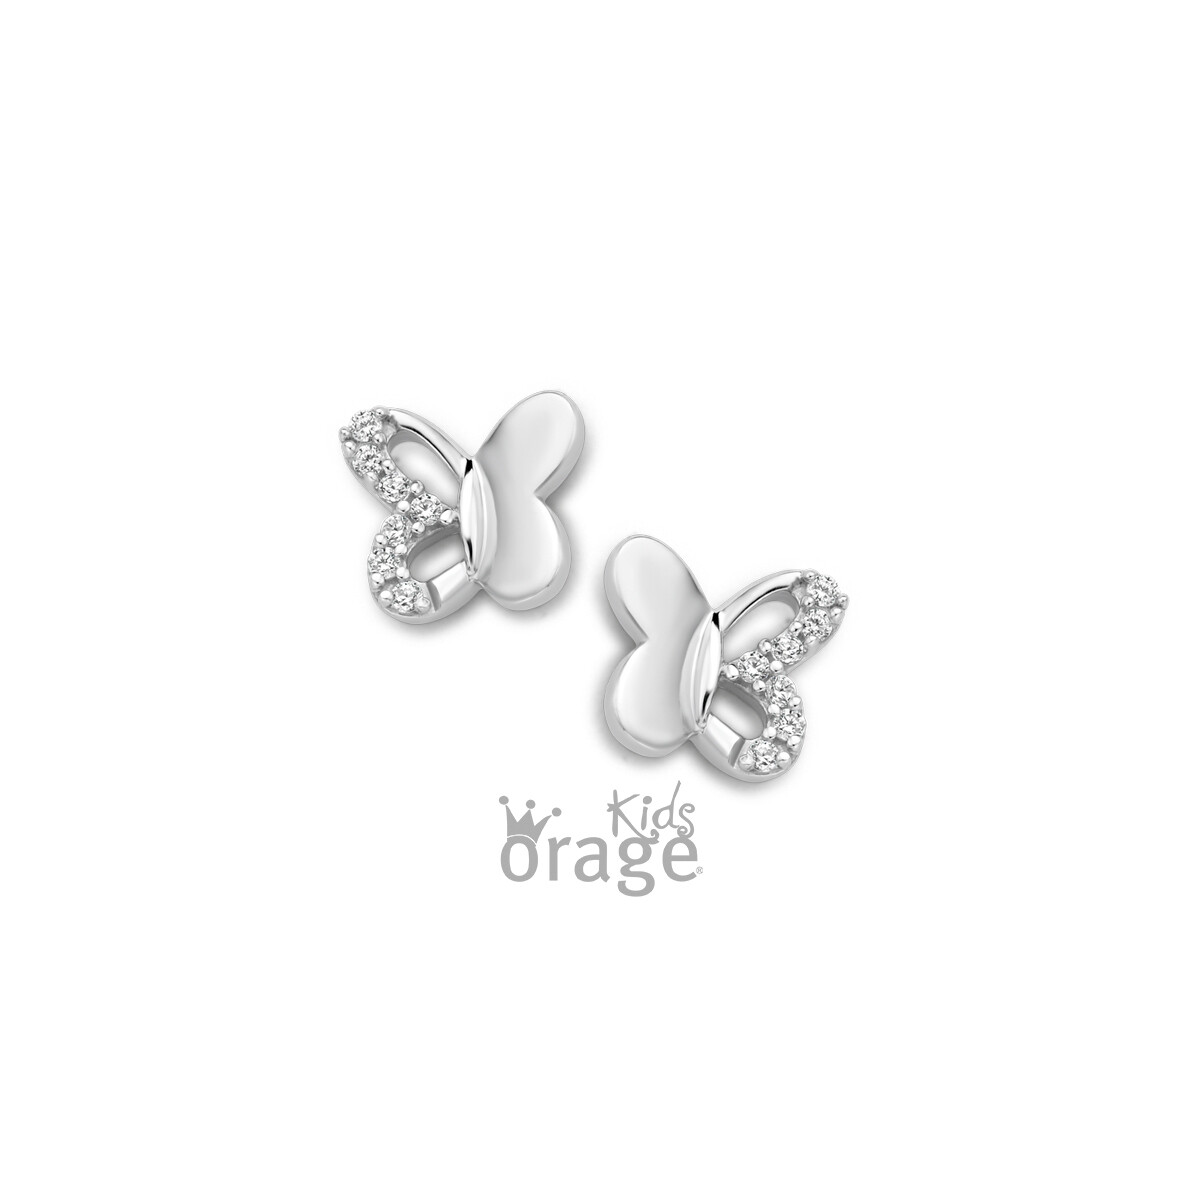 Boucles d'oreilles Orage Kids K1830